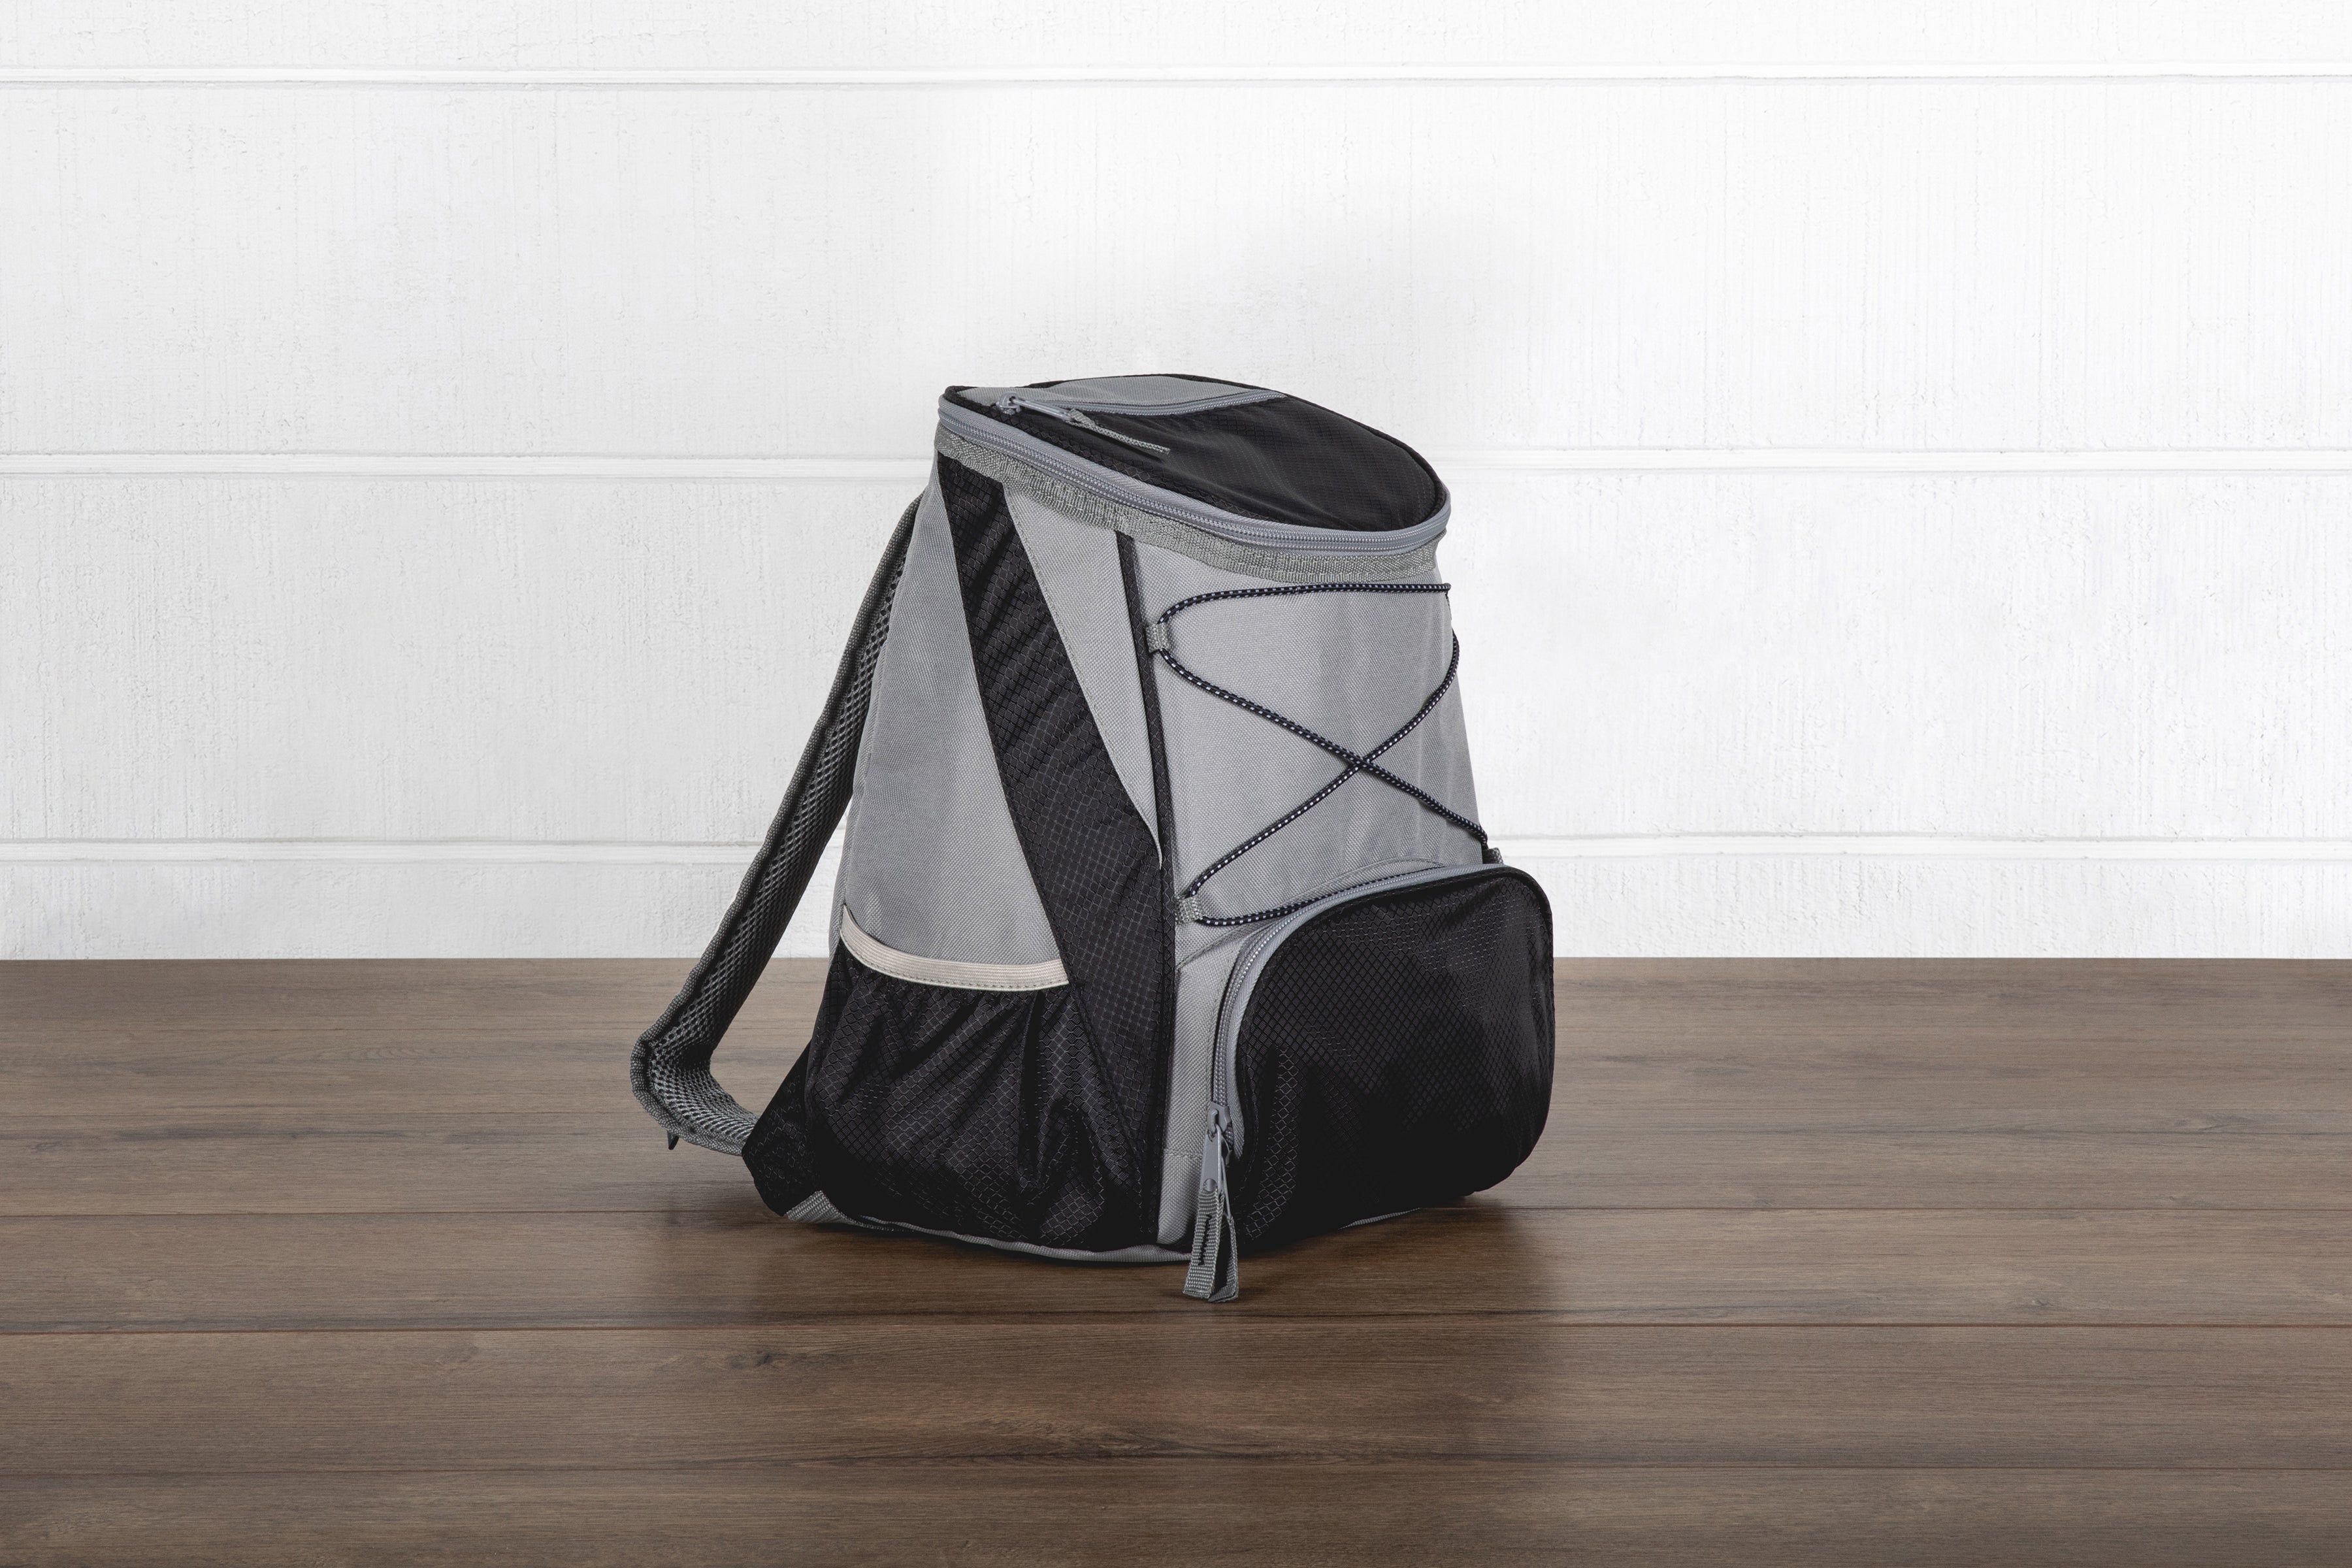 San Jose Sharks - PTX Backpack Cooler